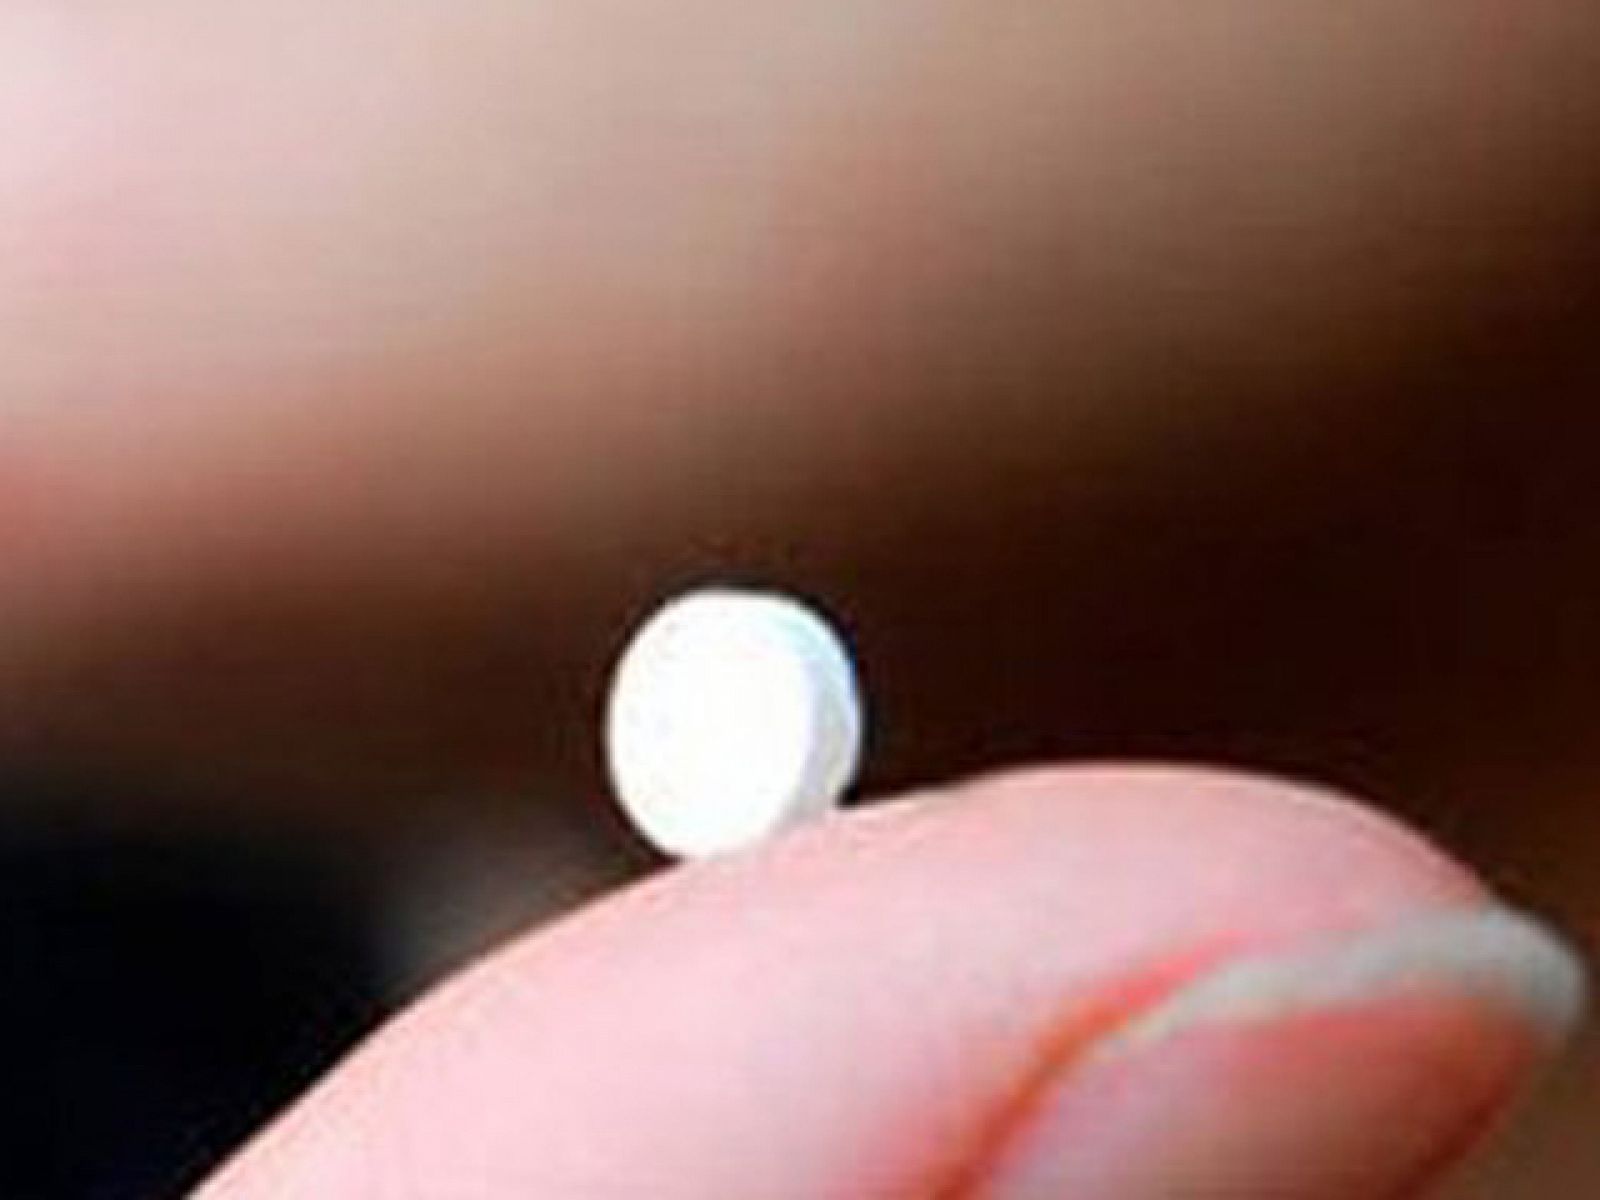 El Ministerio de Sanidad asegura que dispensar la píldora ha reducido el número de abortos